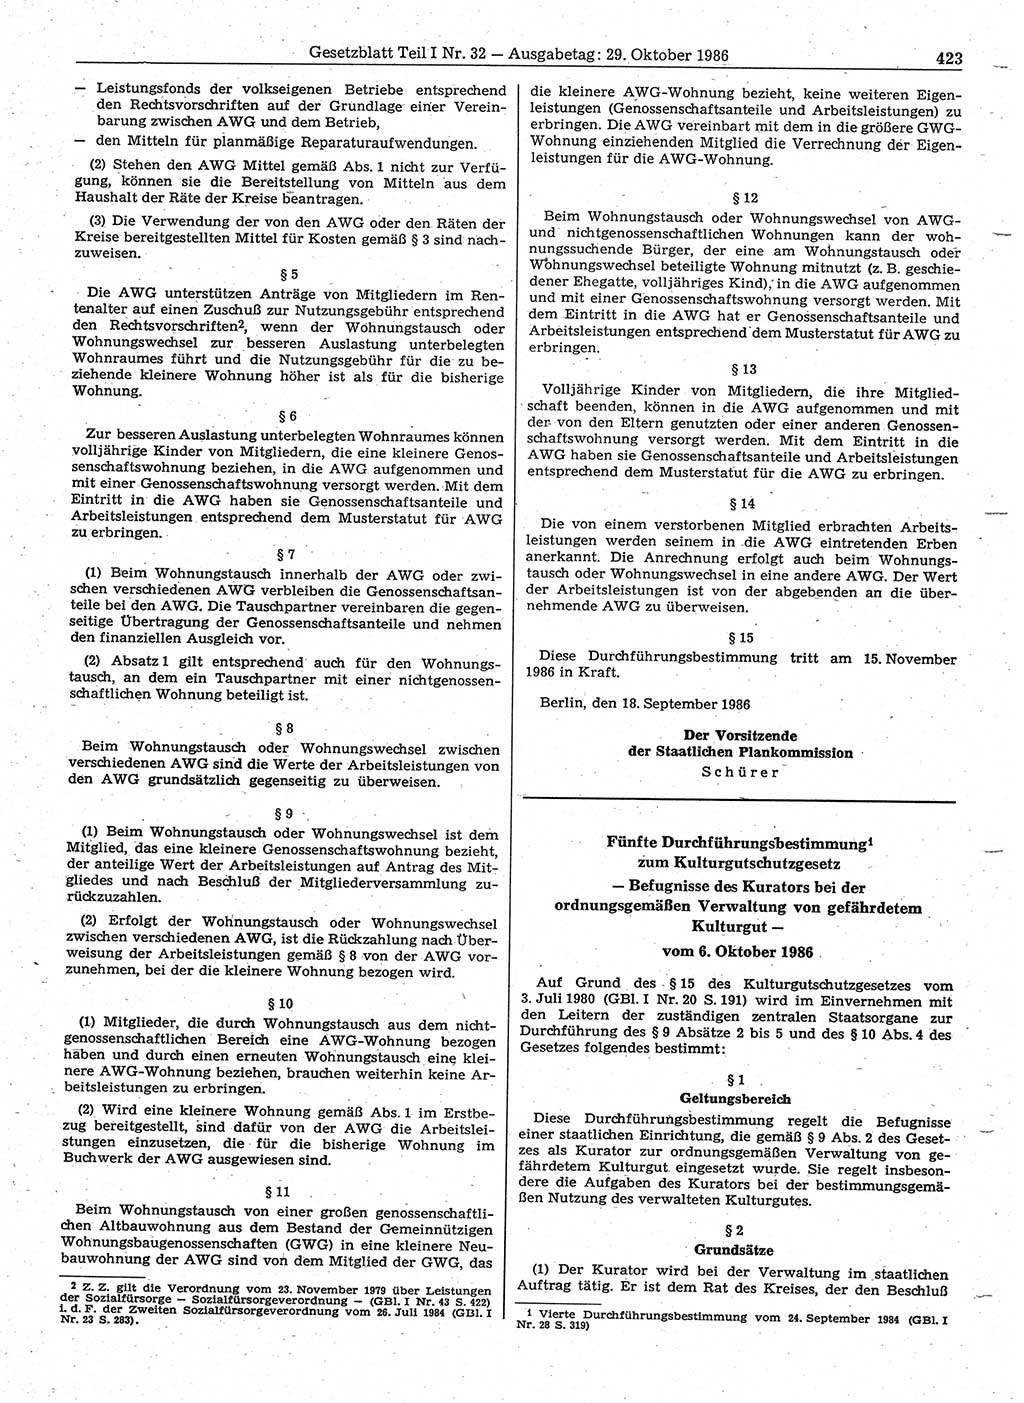 Gesetzblatt (GBl.) der Deutschen Demokratischen Republik (DDR) Teil Ⅰ 1986, Seite 423 (GBl. DDR Ⅰ 1986, S. 423)